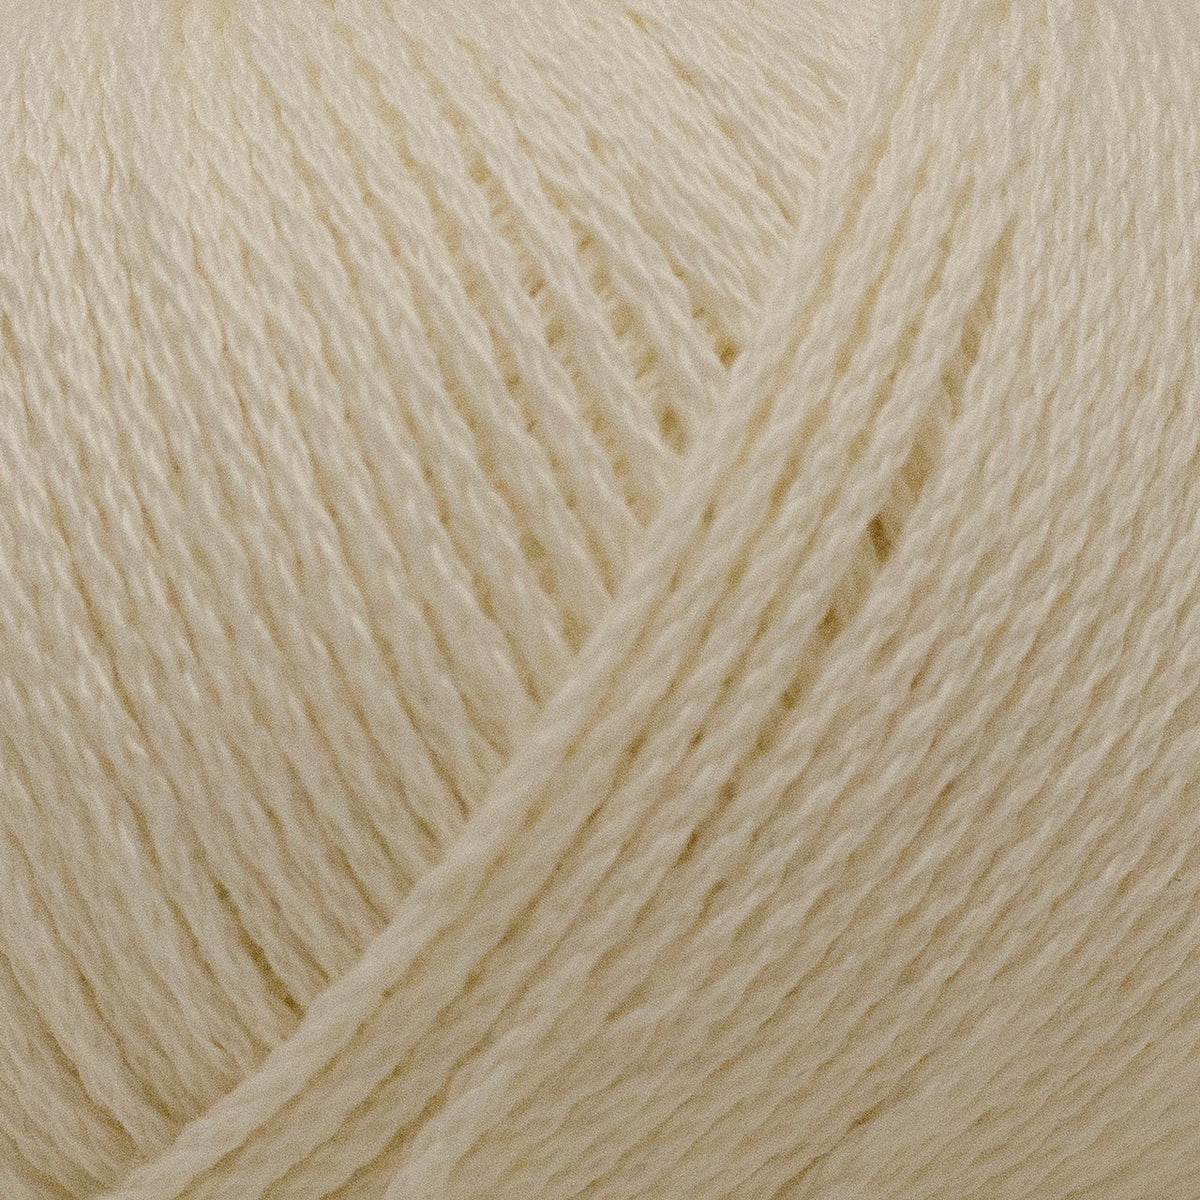 Elleflower - Iris Crochet Duster- Creamy Beige- (SZ 0-12)